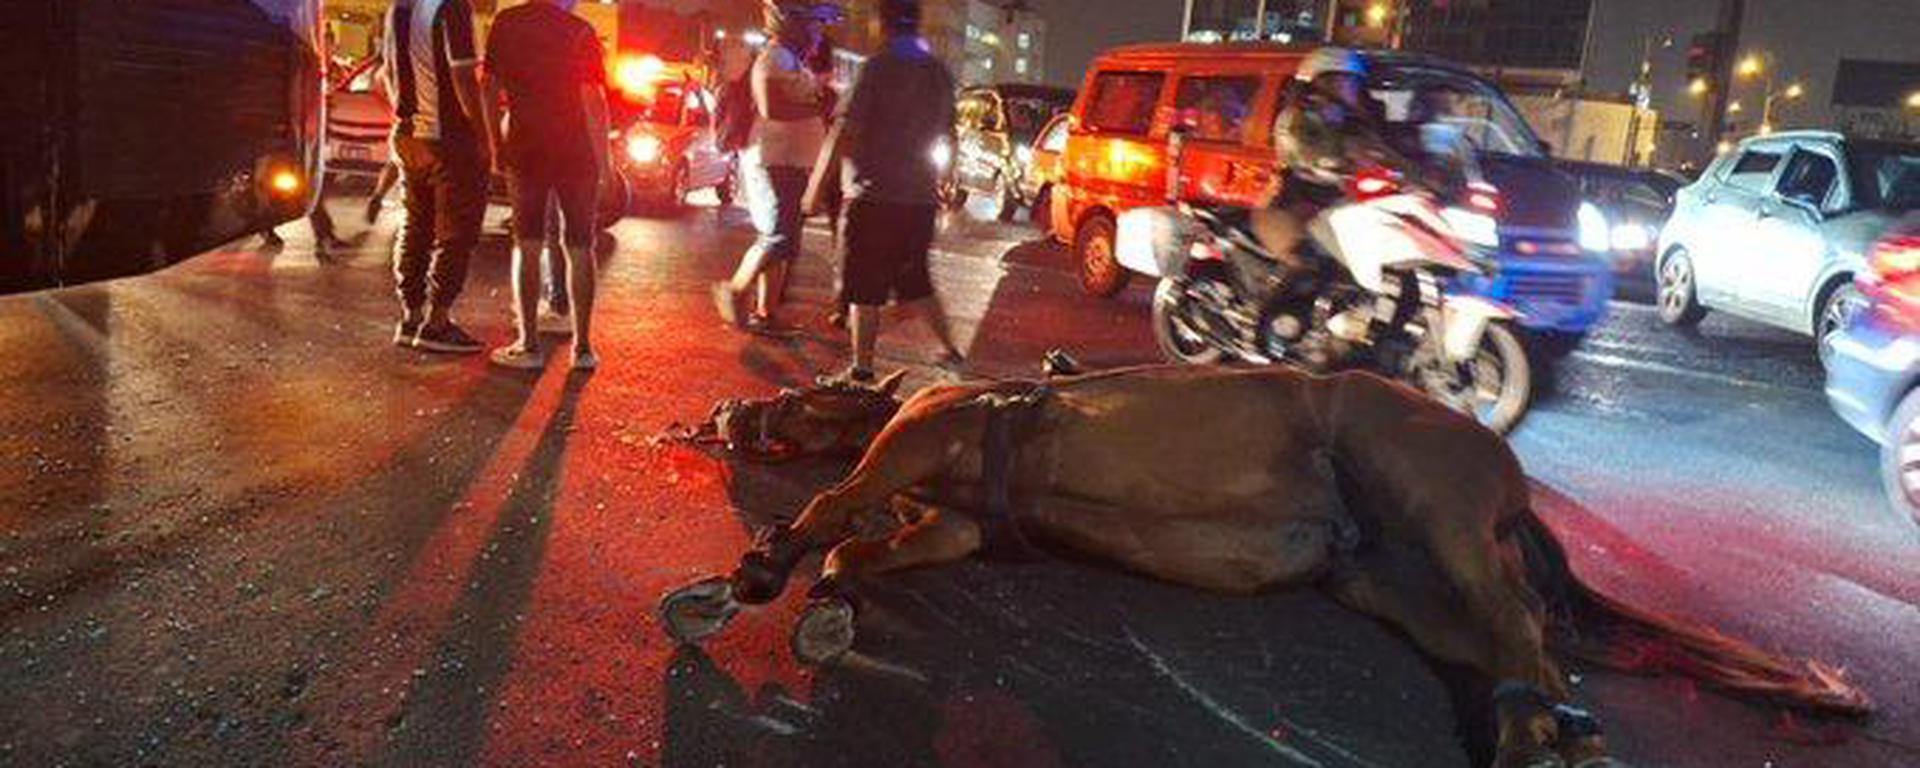 Caballo de la PNP muere durante la Noche Blanquiazul: ¿qué otras alternativas se deberían implementar para controlar las manifestaciones?